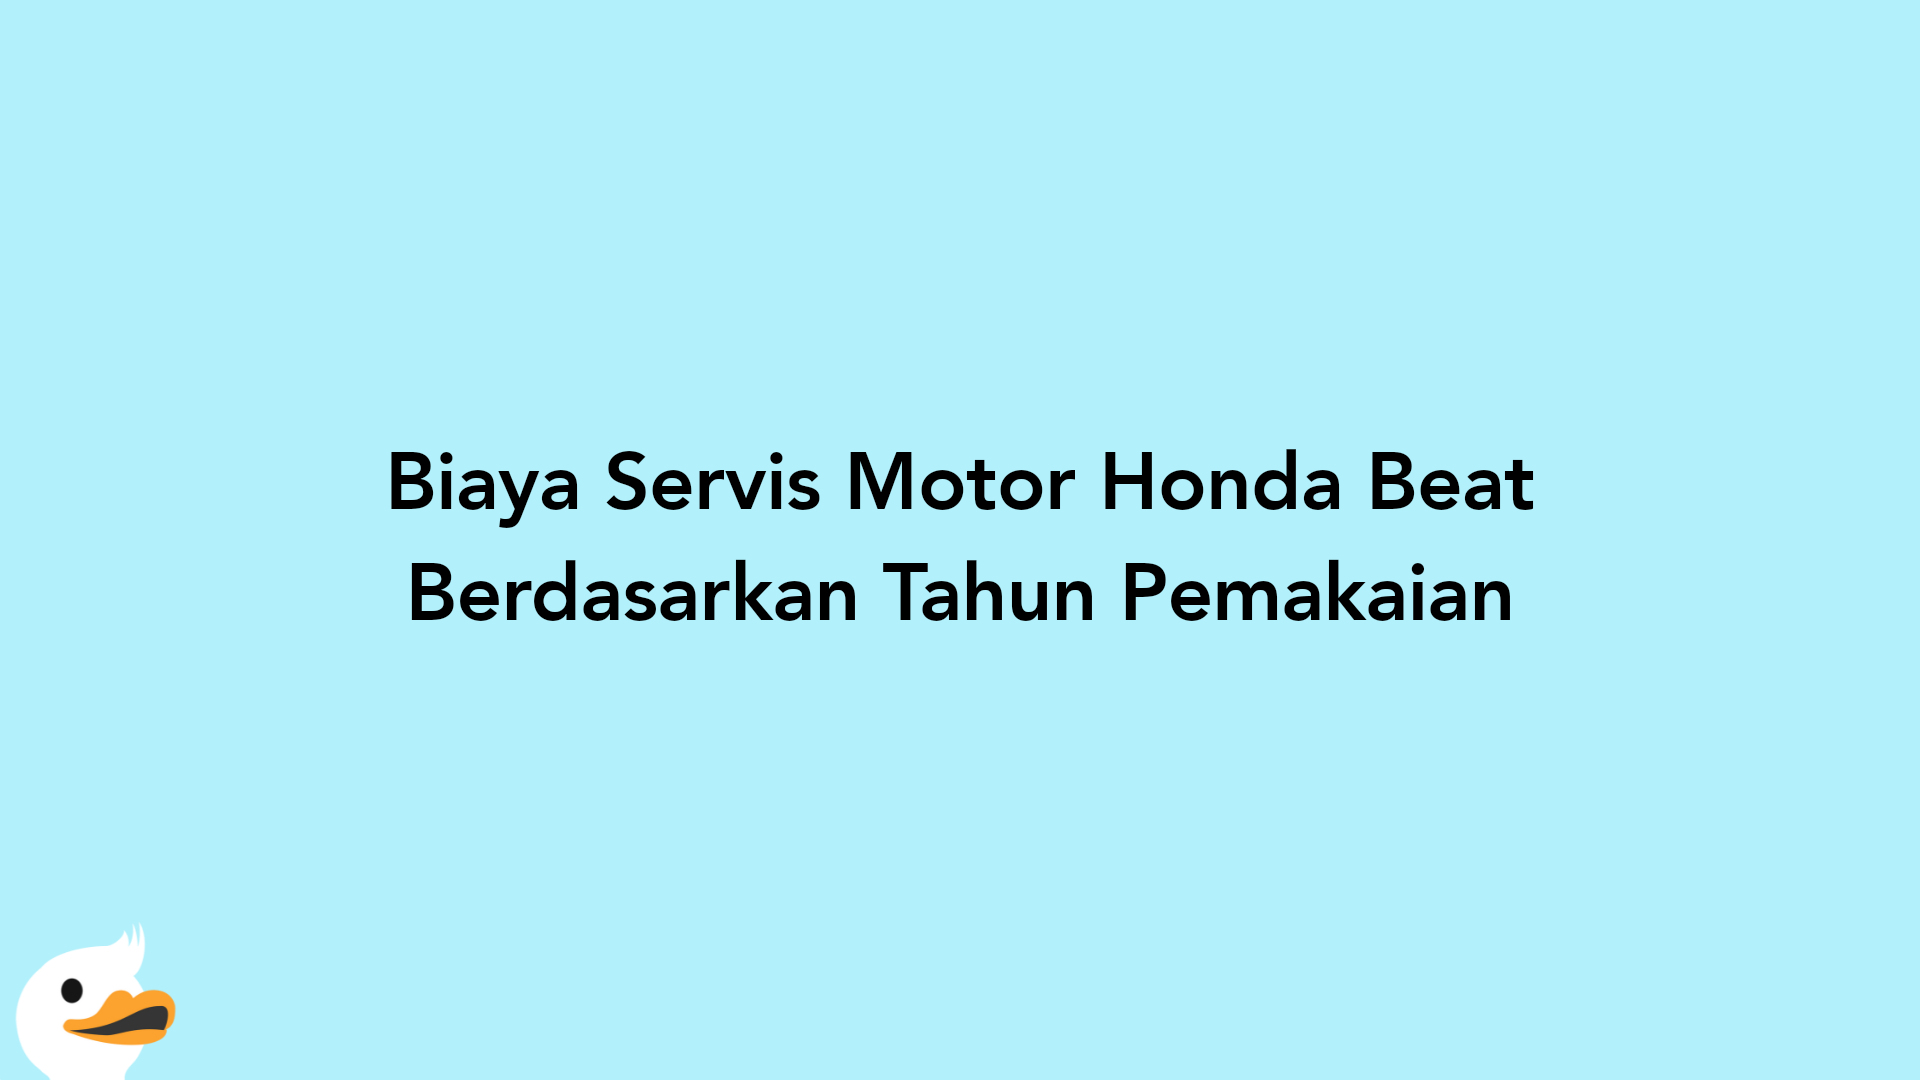 Biaya Servis Motor Honda Beat Berdasarkan Tahun Pemakaian